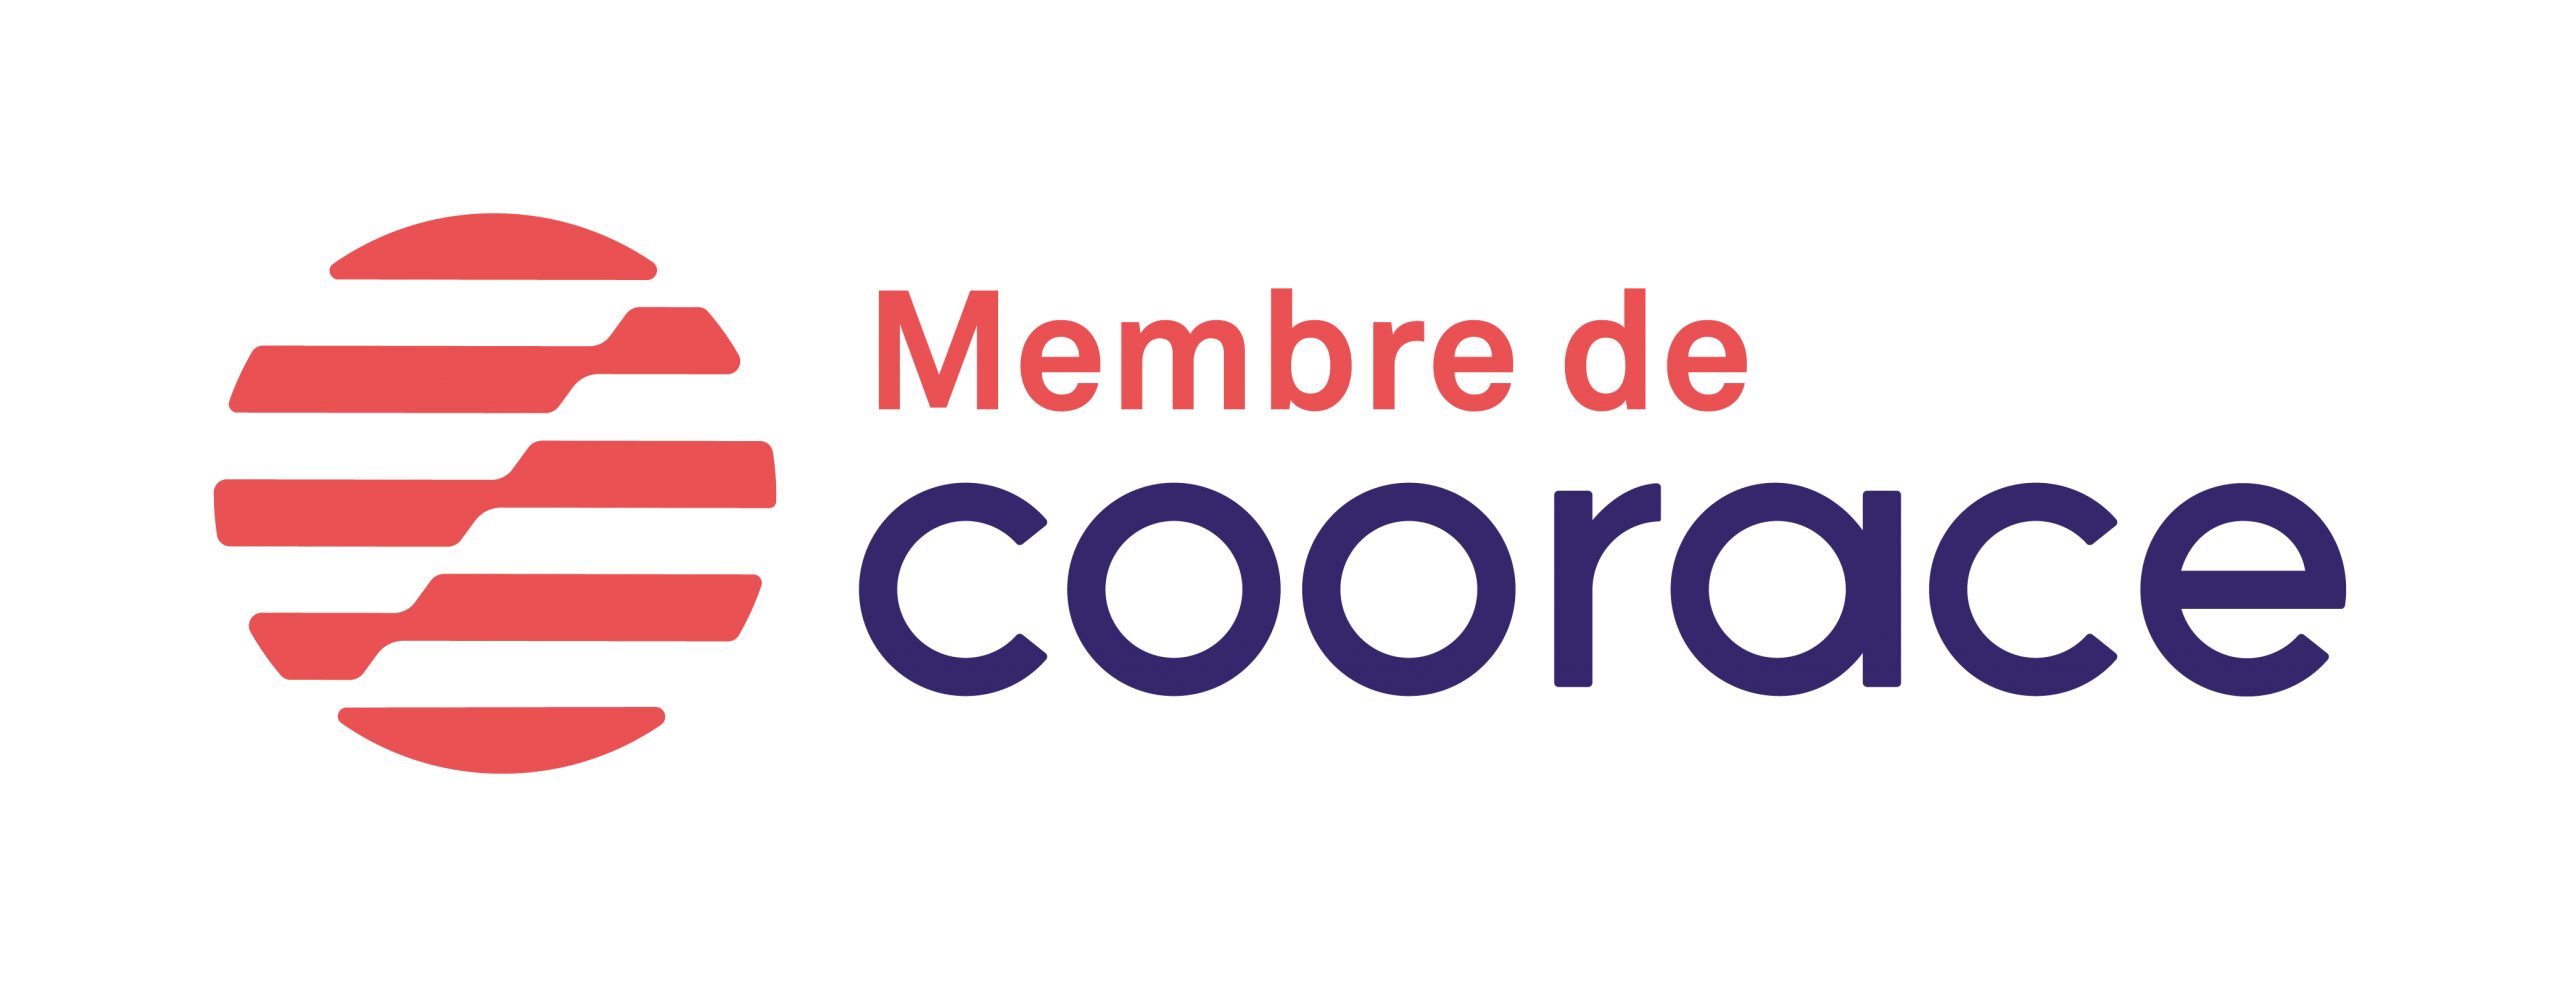 Logo membre coorace - partenaire airelle